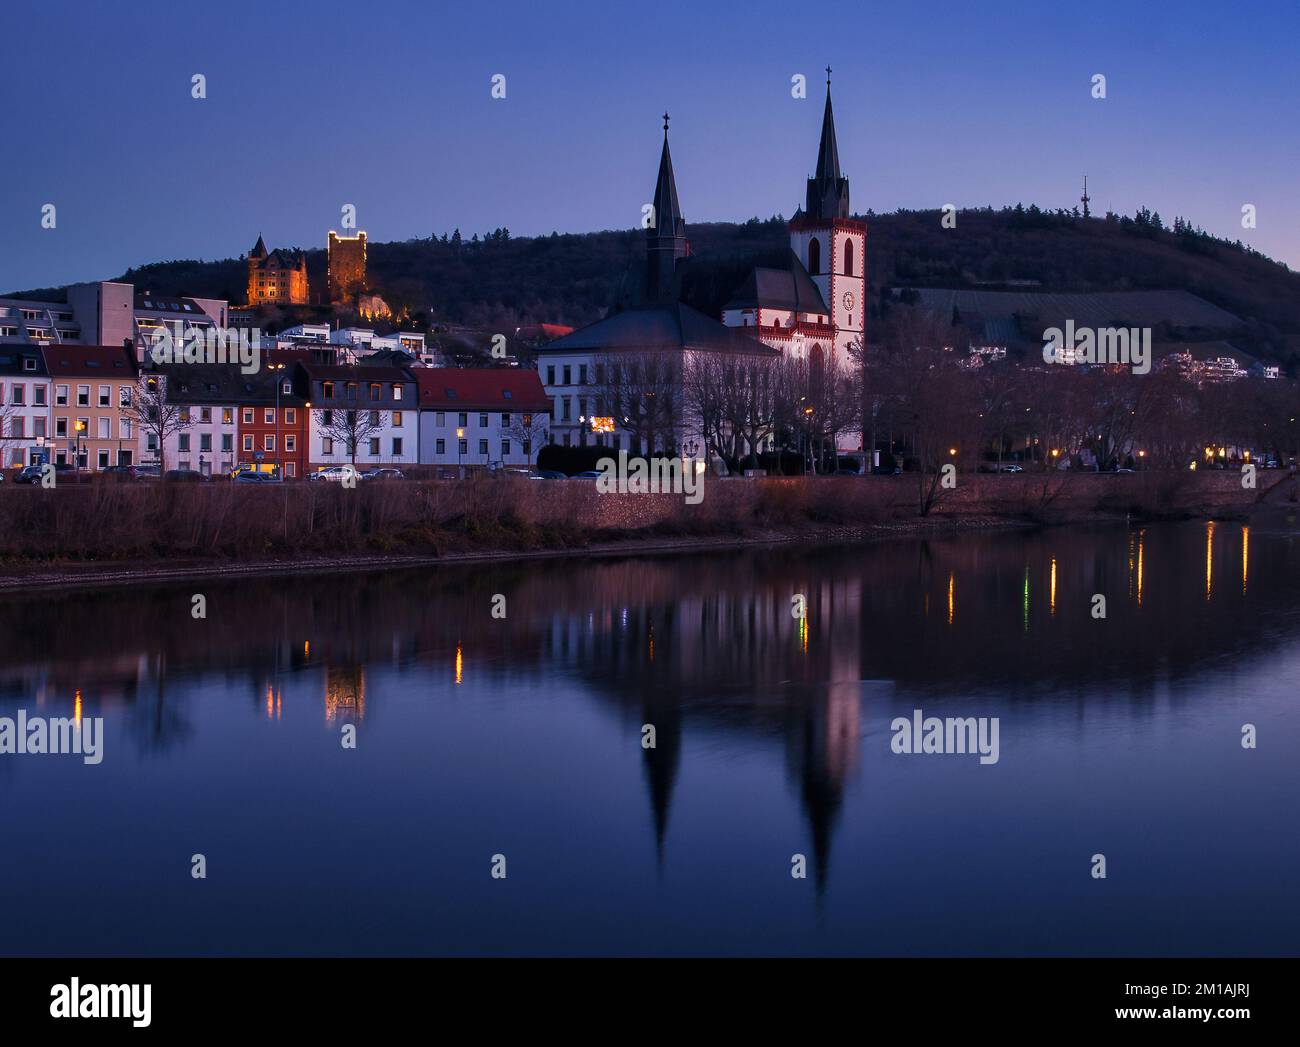 Bingen am Rhein, Germania - 10 gennaio 2021: La Basilica di San Martin e altri edifici accanto al fiume Rhein e al castello di Klopp illuminato Foto Stock